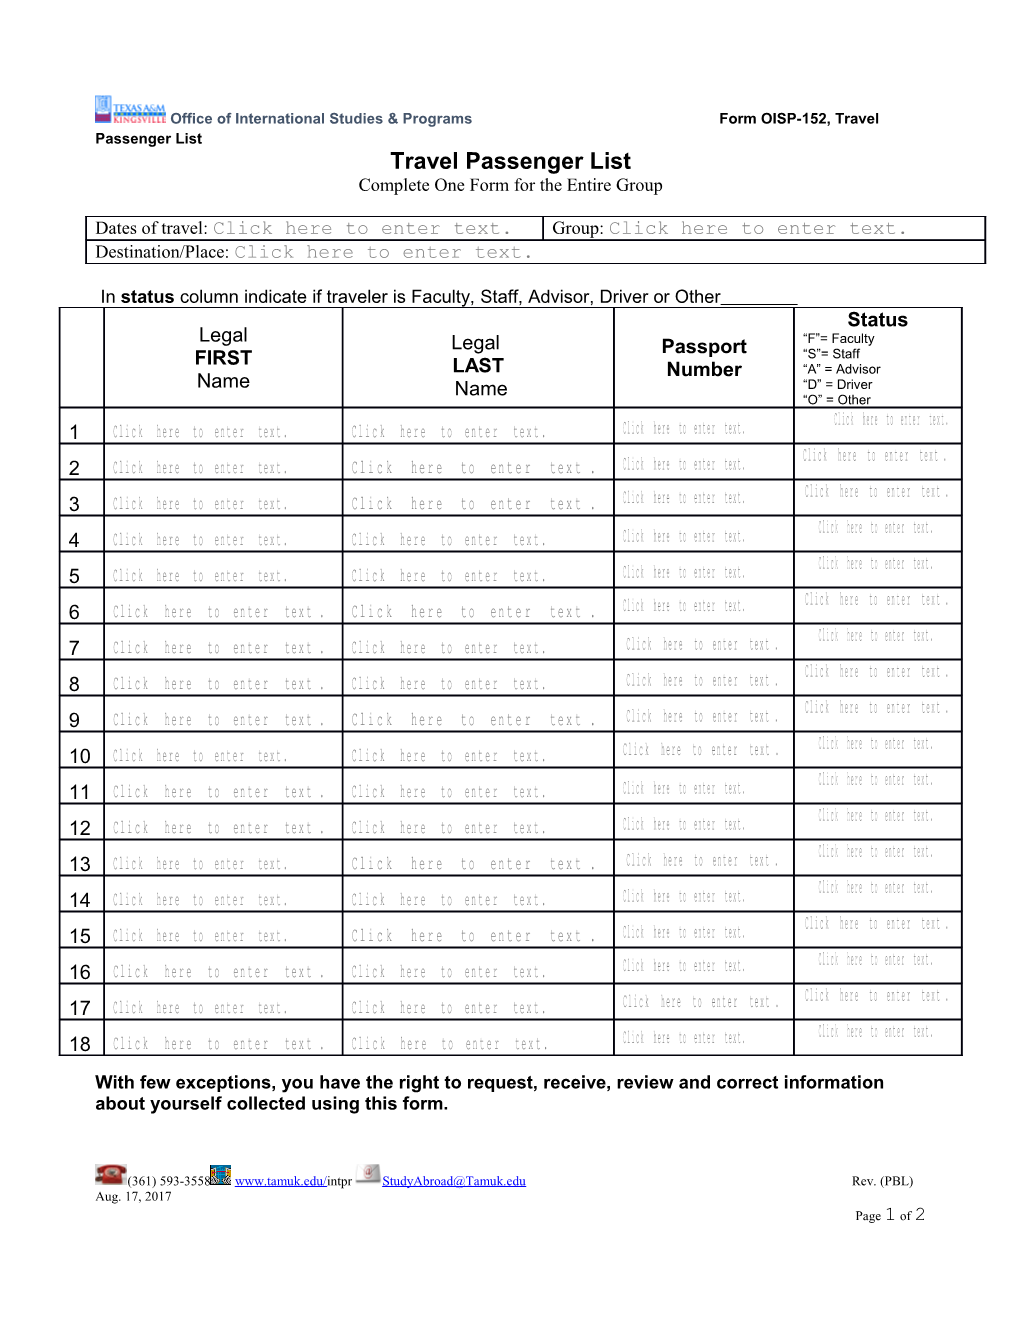 Travel Passenger List